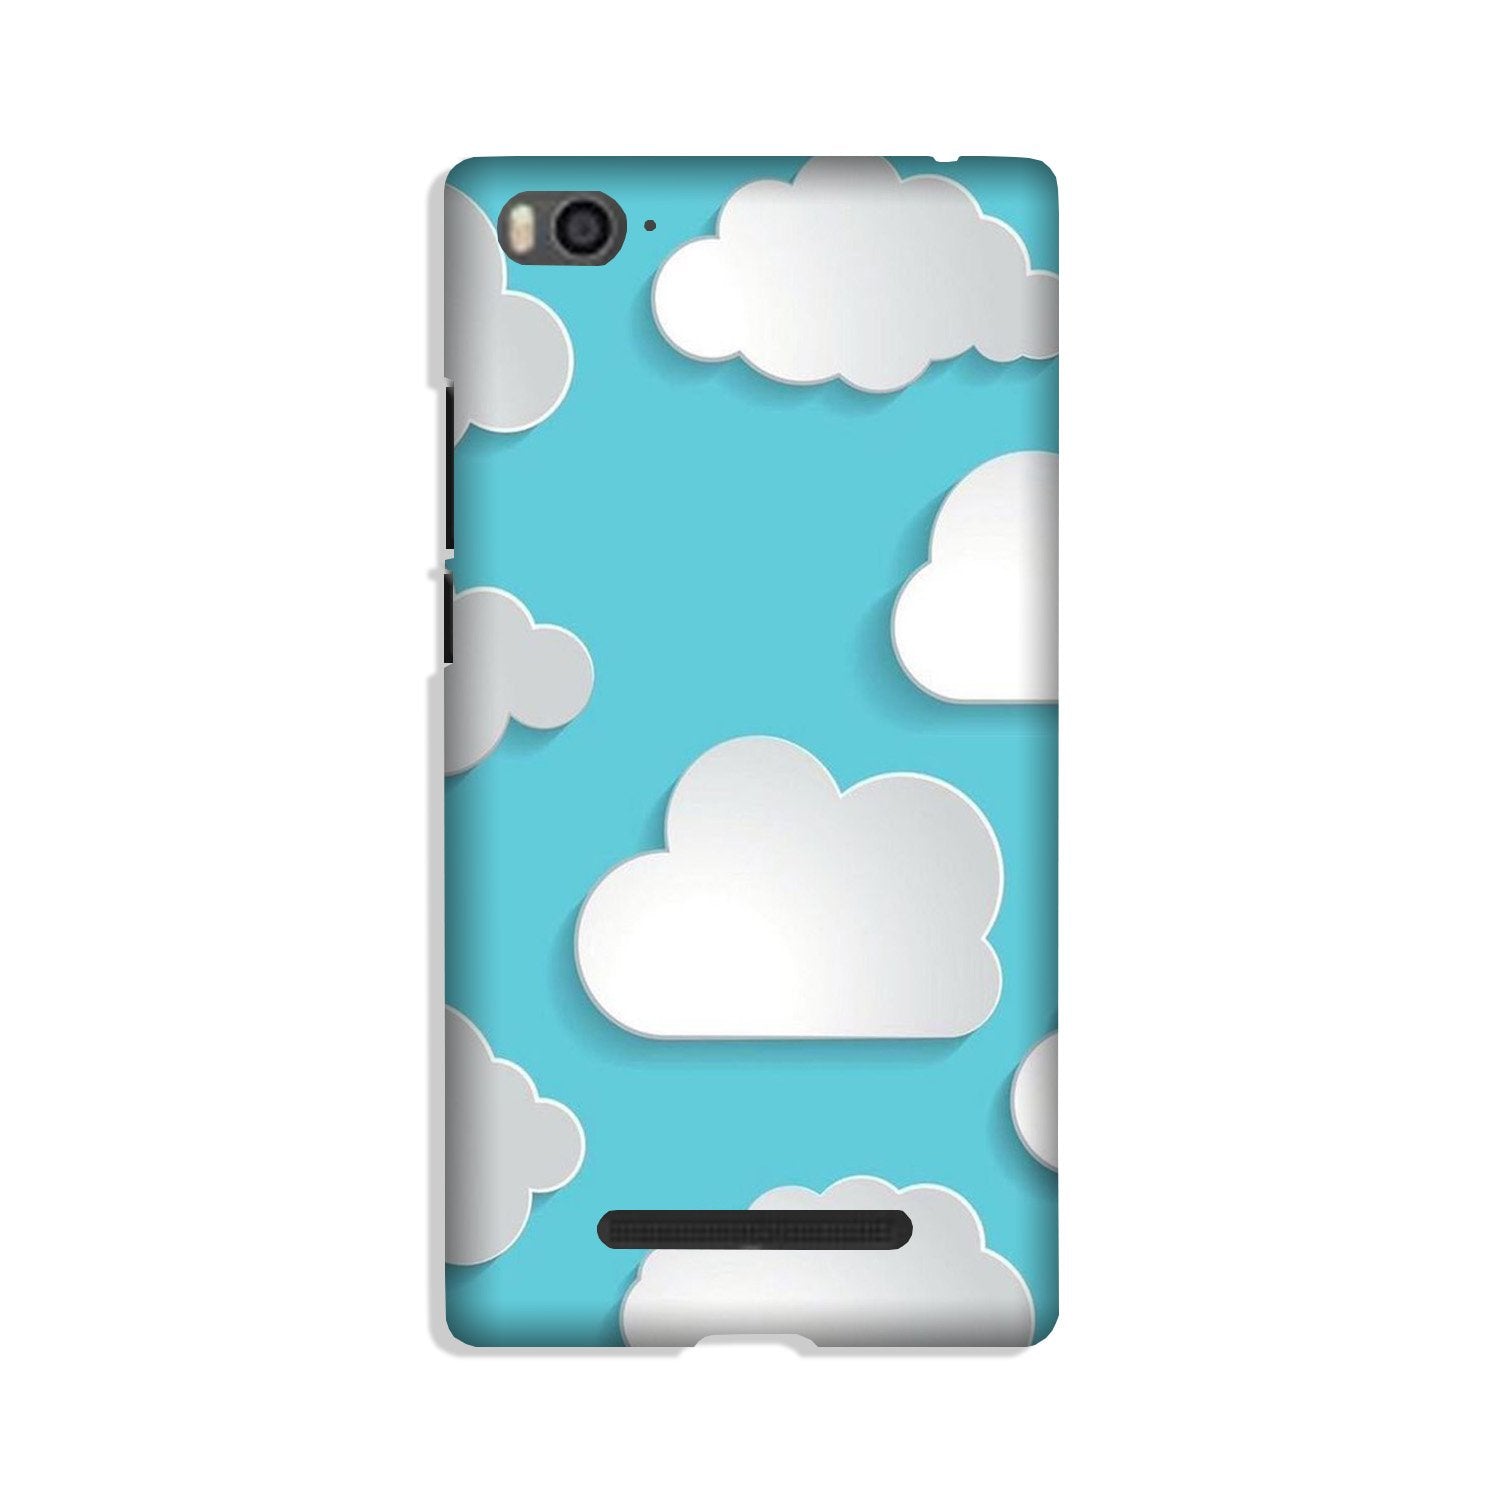 Clouds Case for Xiaomi Mi 4i (Design No. 210)